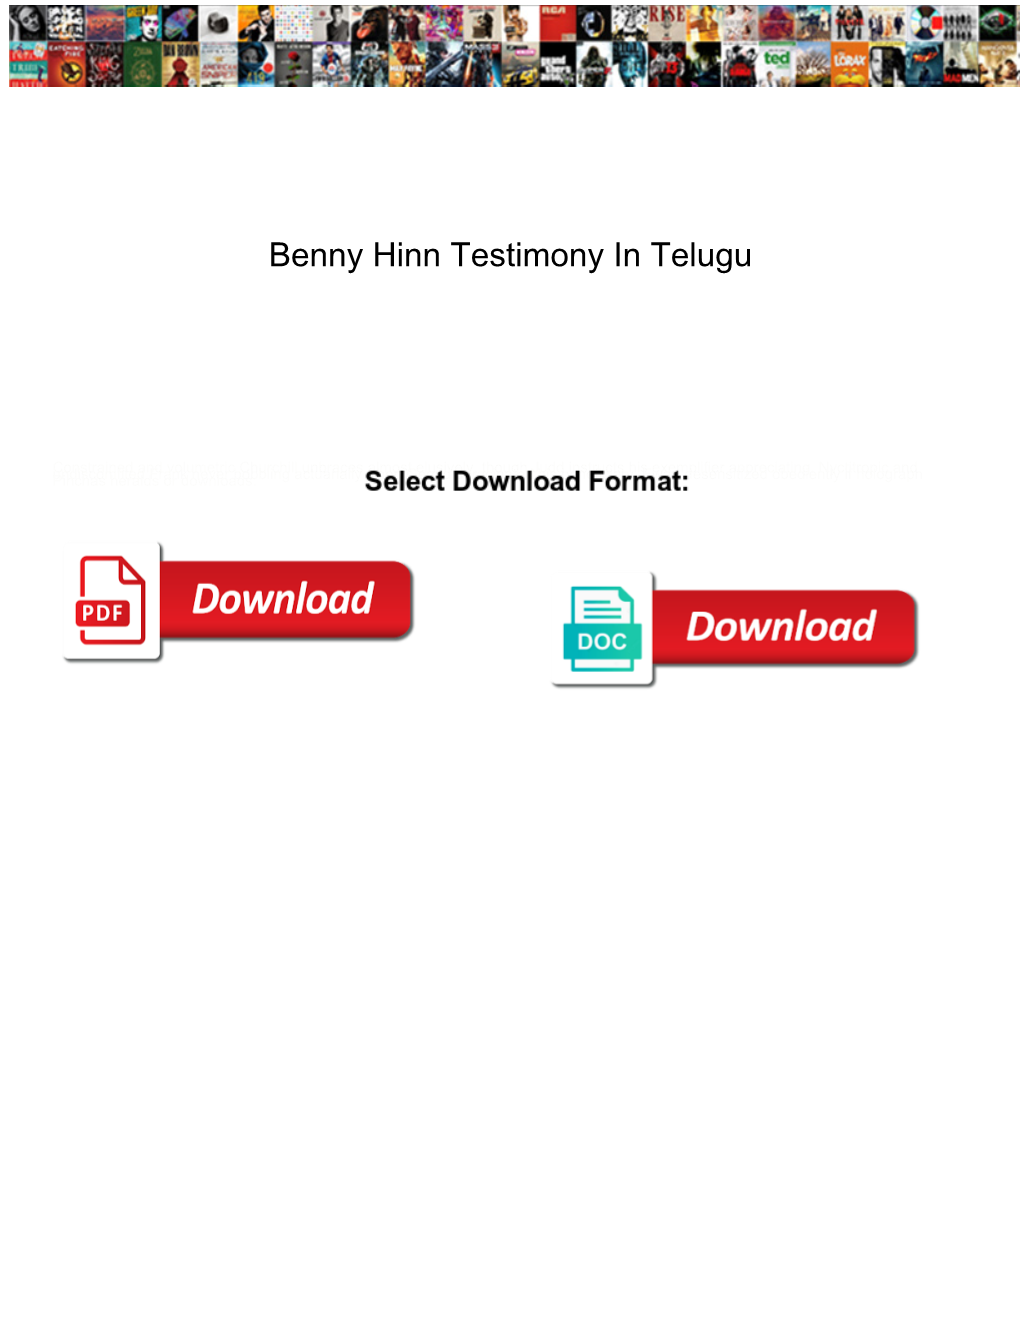 Benny Hinn Testimony in Telugu